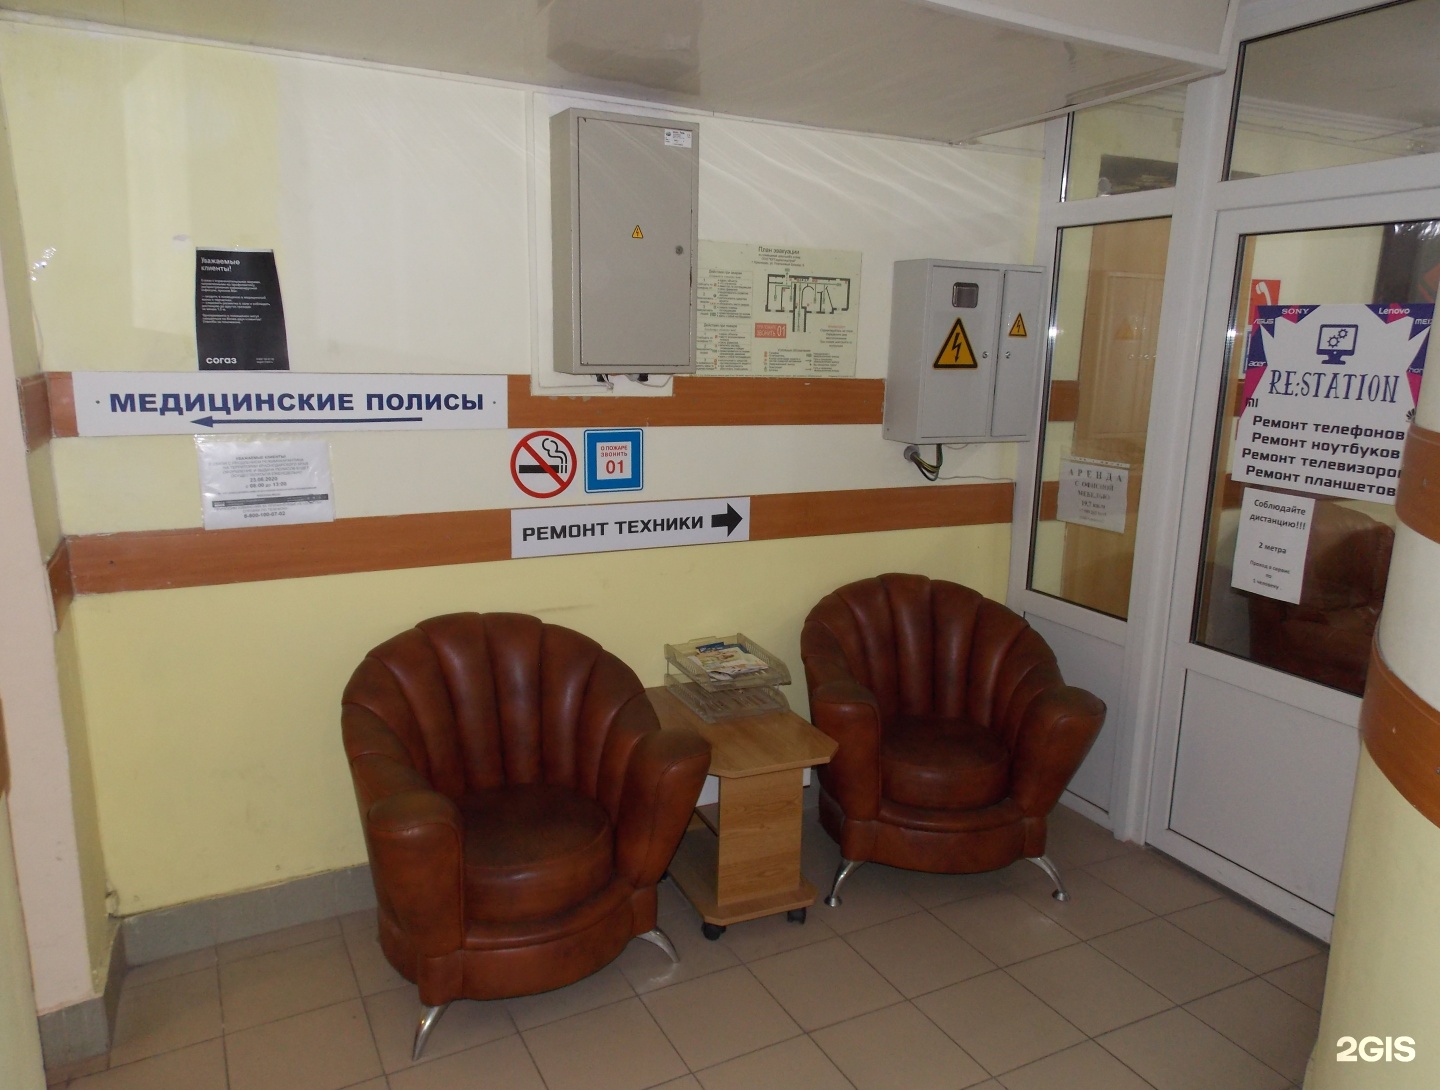 Сервисный центр телефонов краснодар. Постовая 8 Краснодар ремонт телефонов.